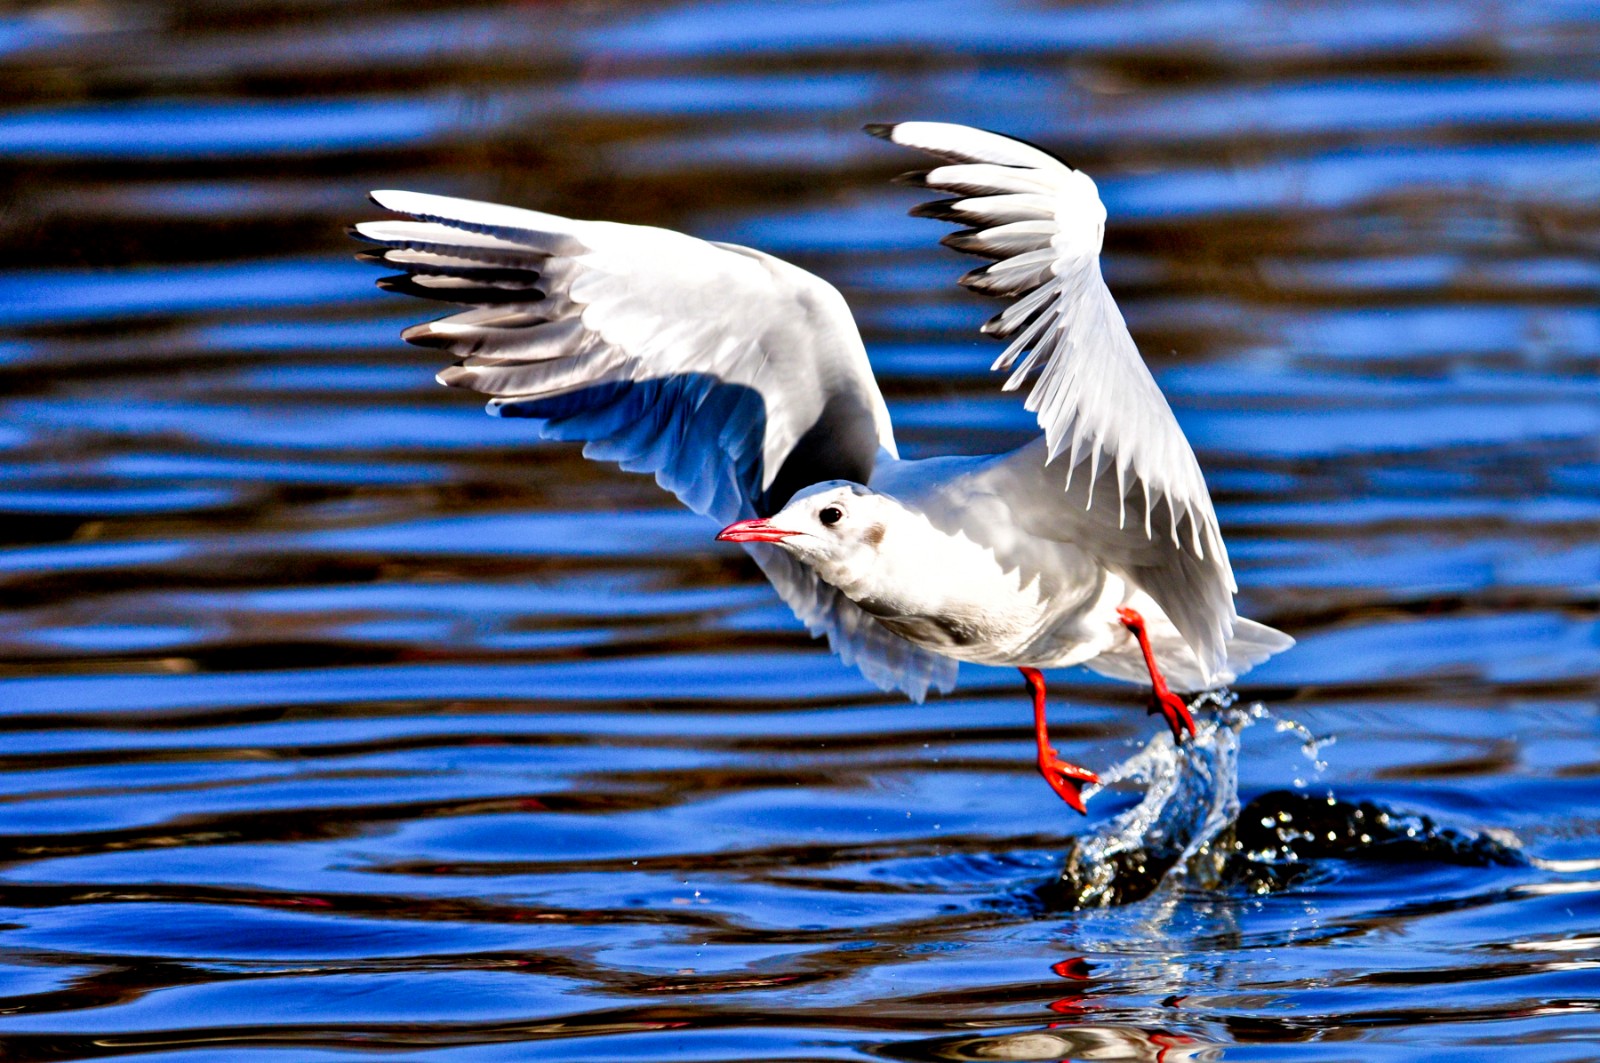 5、《振翅高飞》摄于2012年1月云南昆明，表现了海鸥振翅高飞的瞬间。.JPG